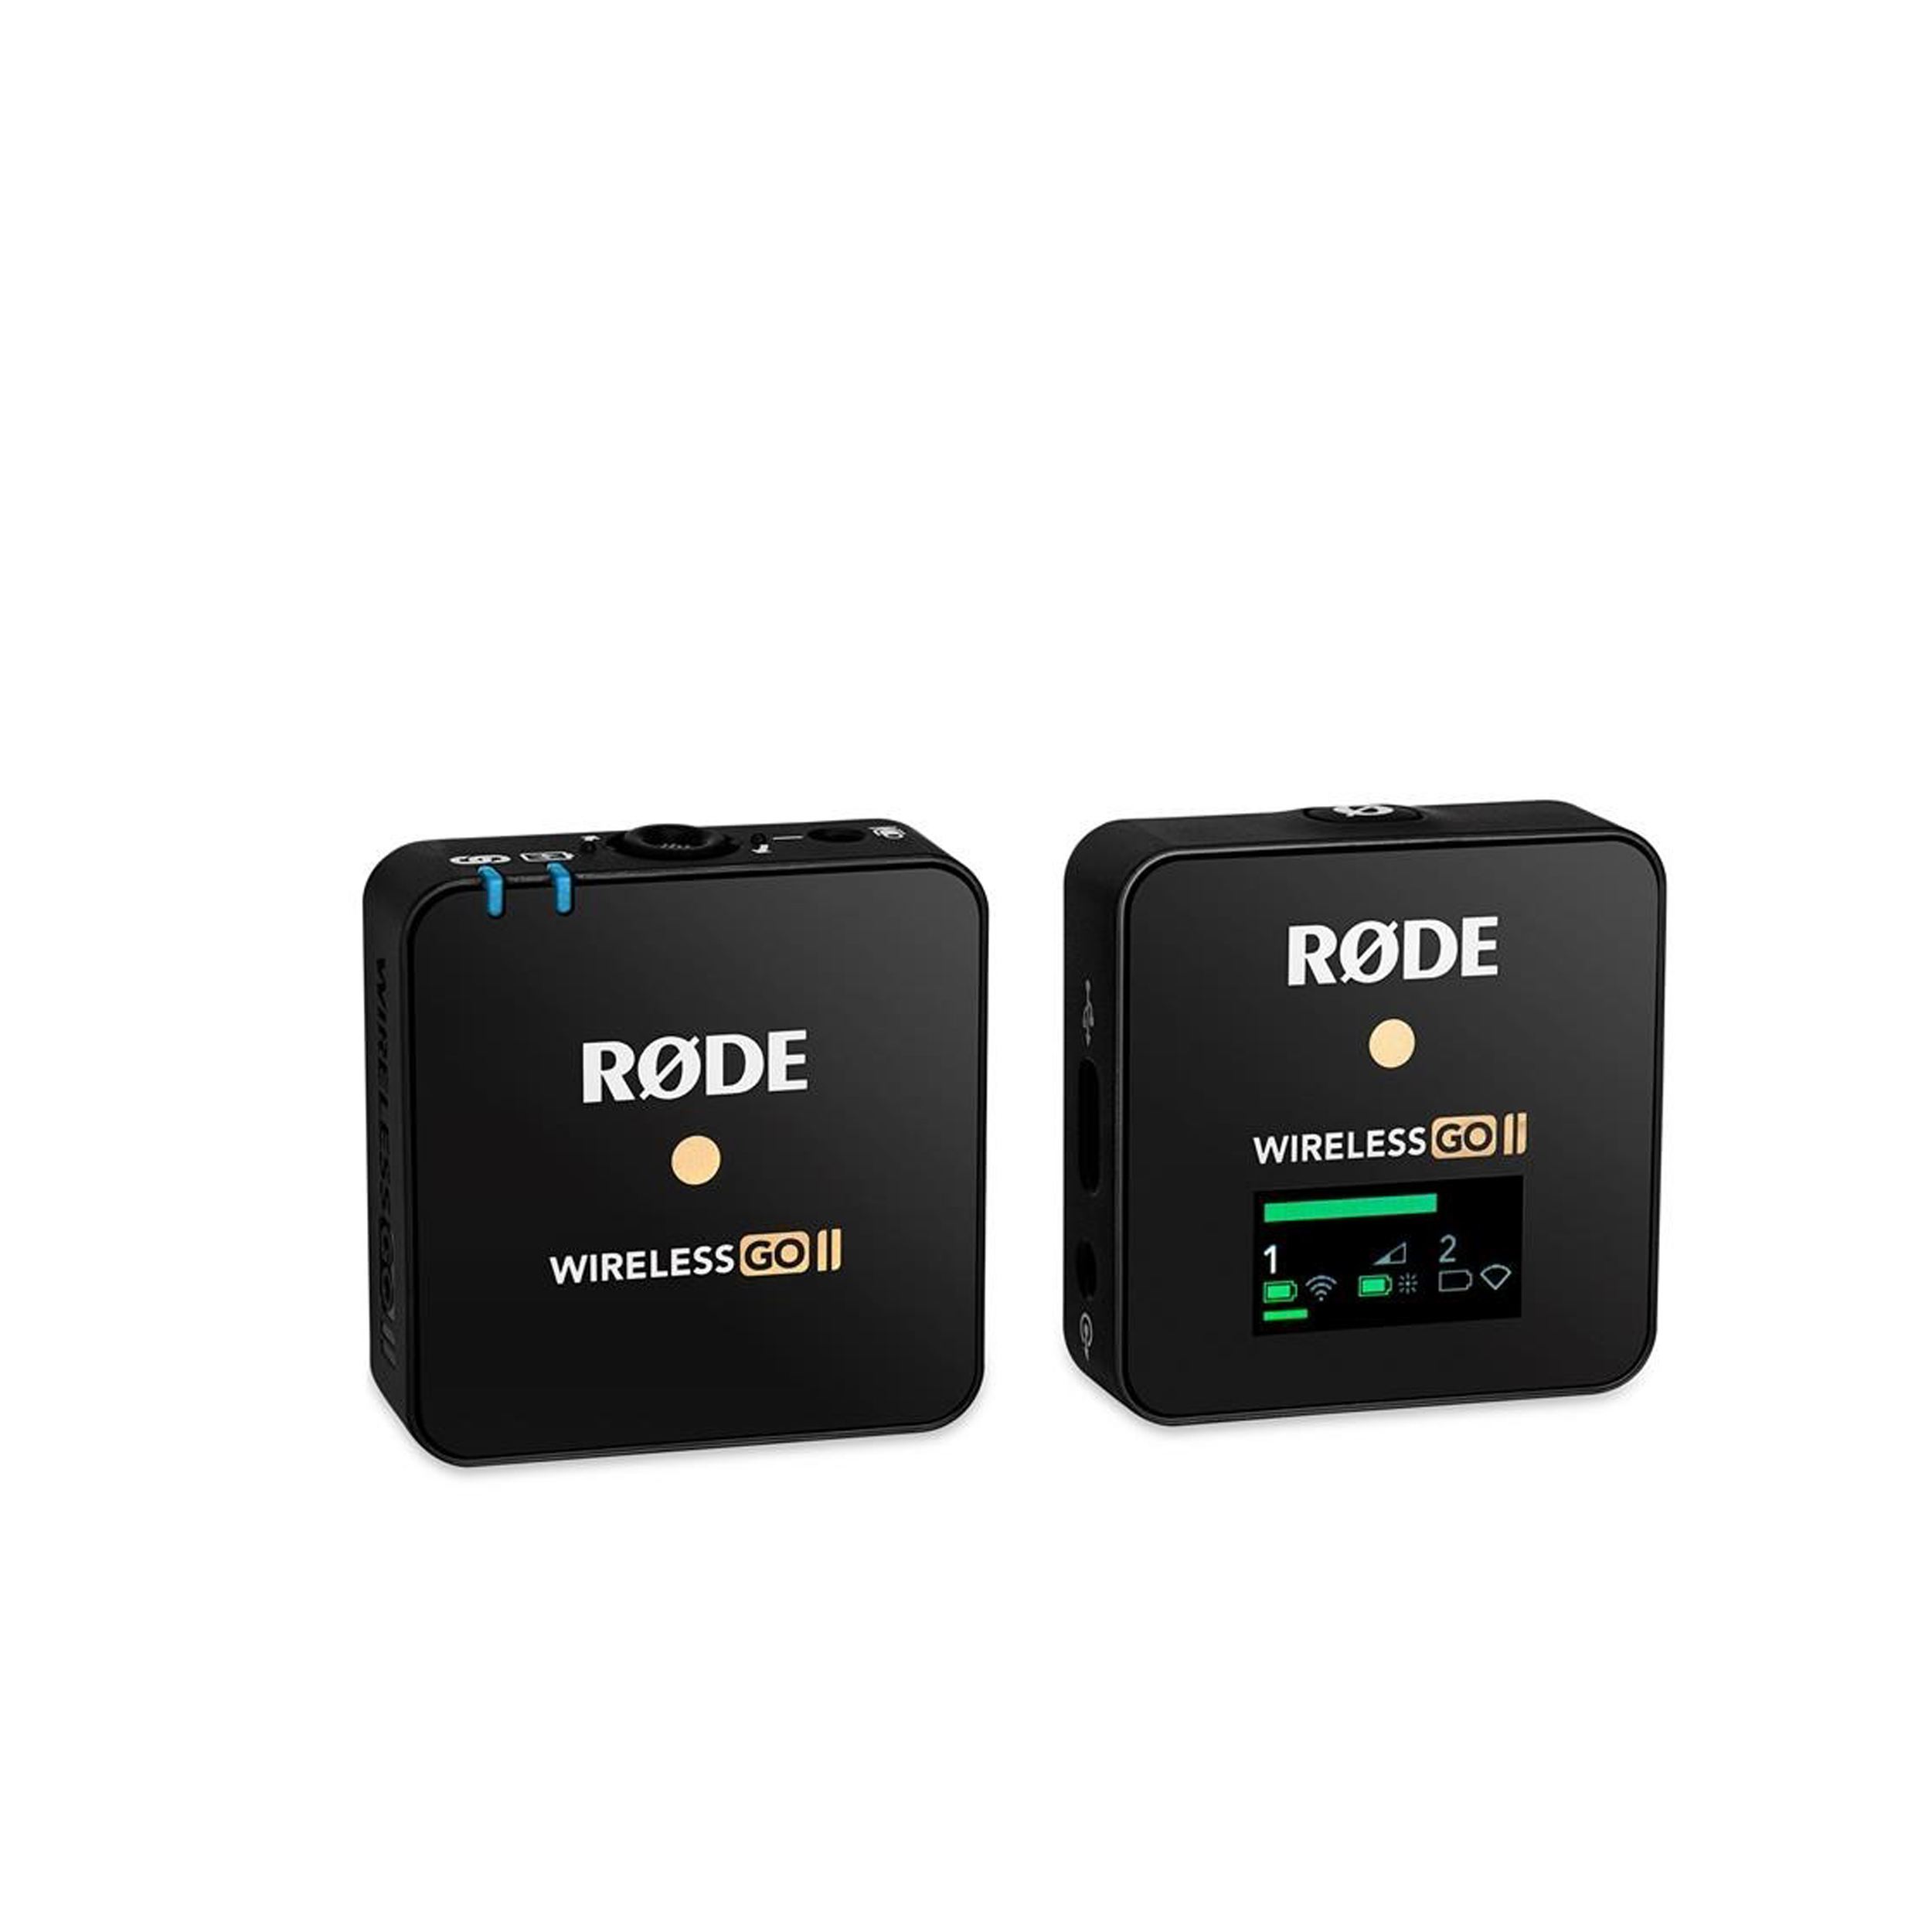 Rode Rode Wireless GO II SEMPRE SYMICAL SYSTÈME / Recorder sans fil numérique compact, 2,4 GHz - noir